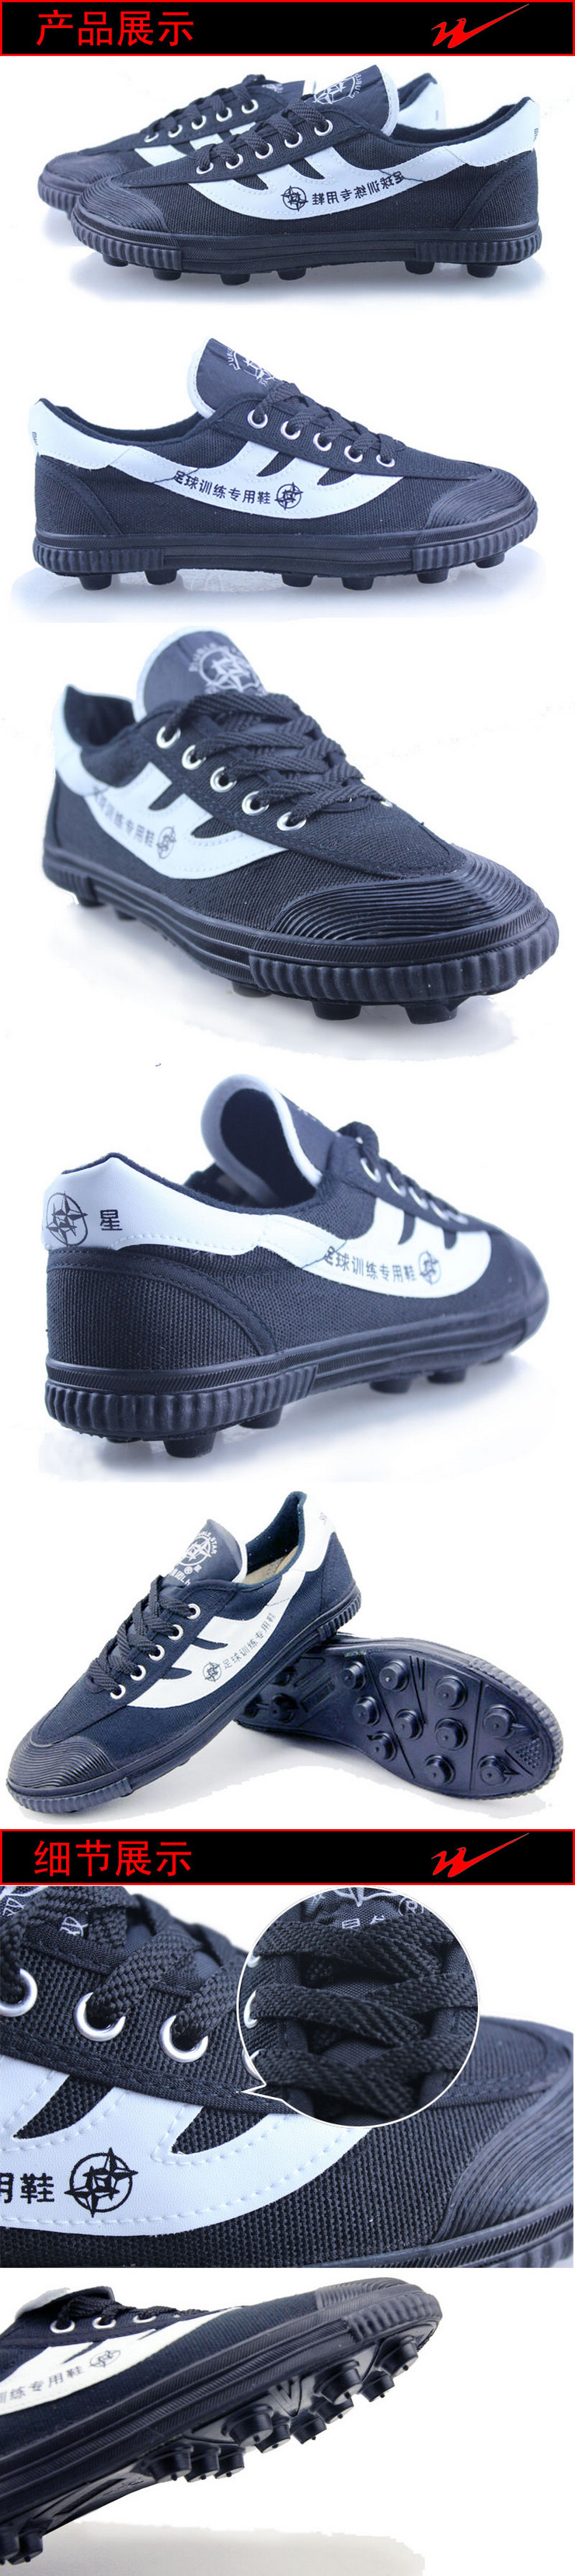 Chaussures de foot DOUBLE STAR - ventilé, Fonction de pliage facile - Ref 2444492 Image 27